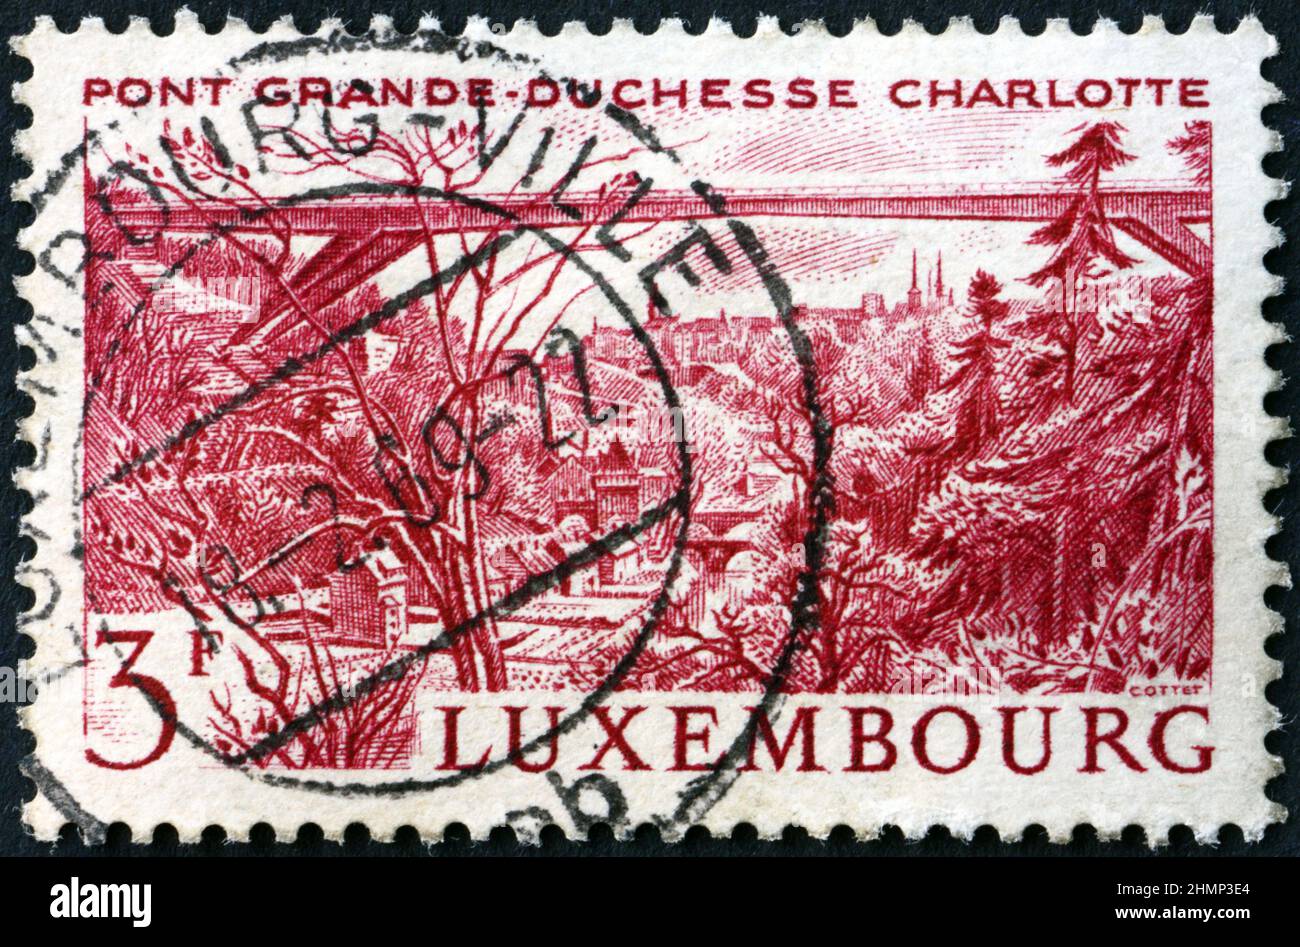 LUXEMBURG - UM 1966: Eine in Luxemburg gedruckte Briefmarke zeigt die Großherzogin Charlotte Bridge, um 1966 Stockfoto